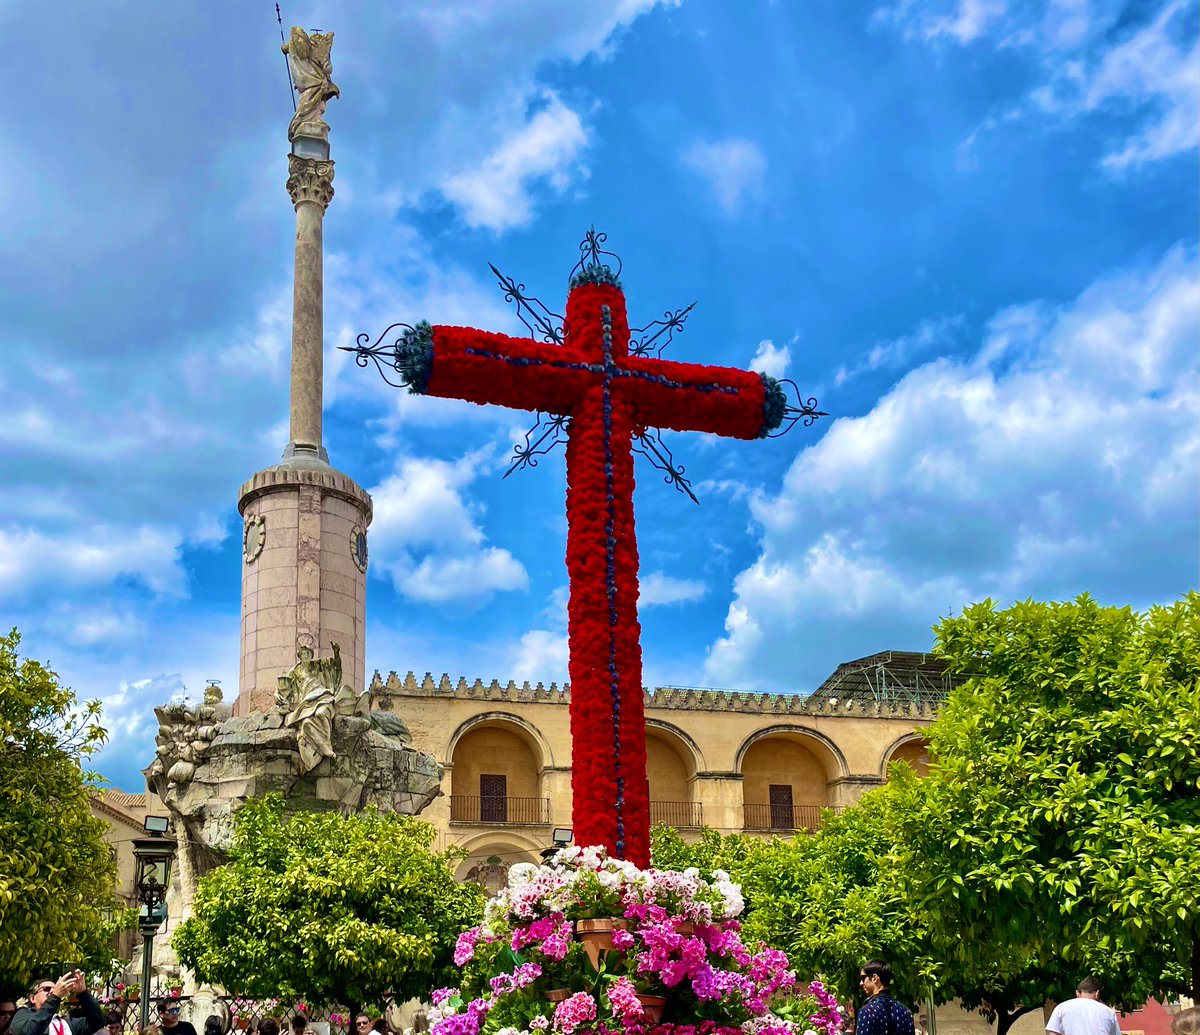 Quinta jornada de Cruces en la Cruz de Mayo de la Plaza del Triunfo. 

#CruzdeMayo #CrucesdeMayo #MayoFestivo #MayoCordobes